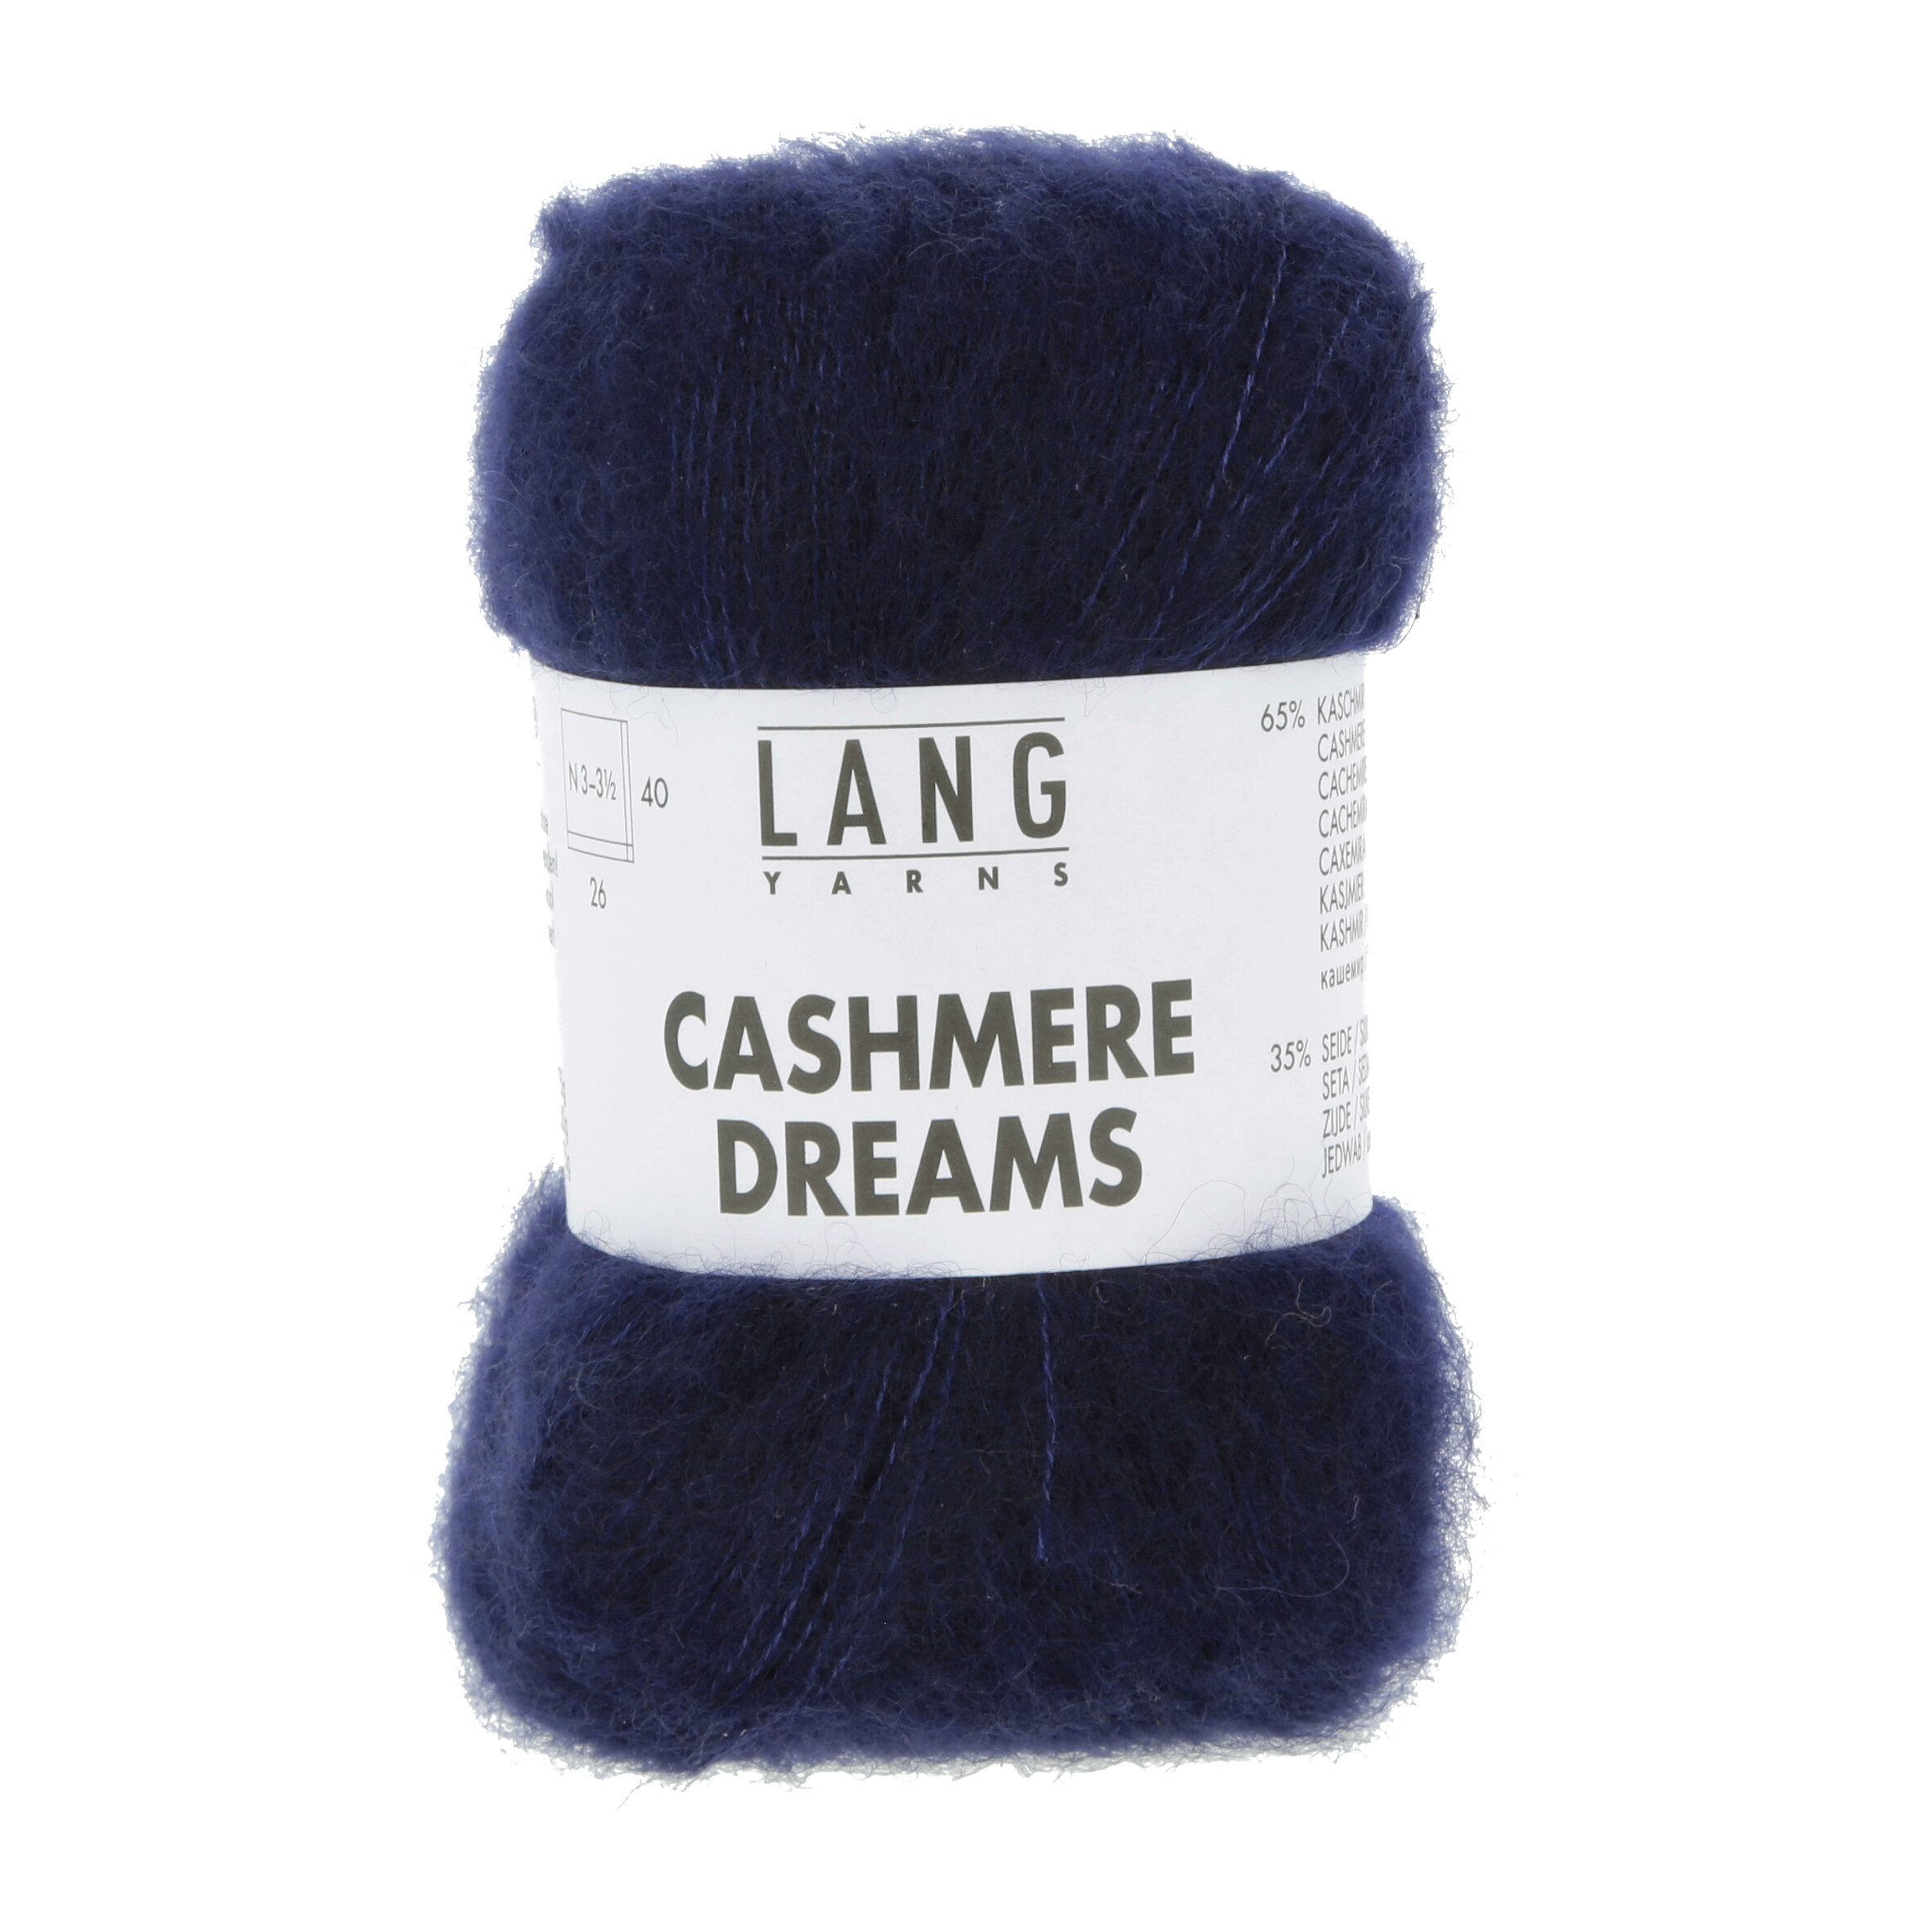 Lang Yarns Cashmere Dreams, 0035, Marine